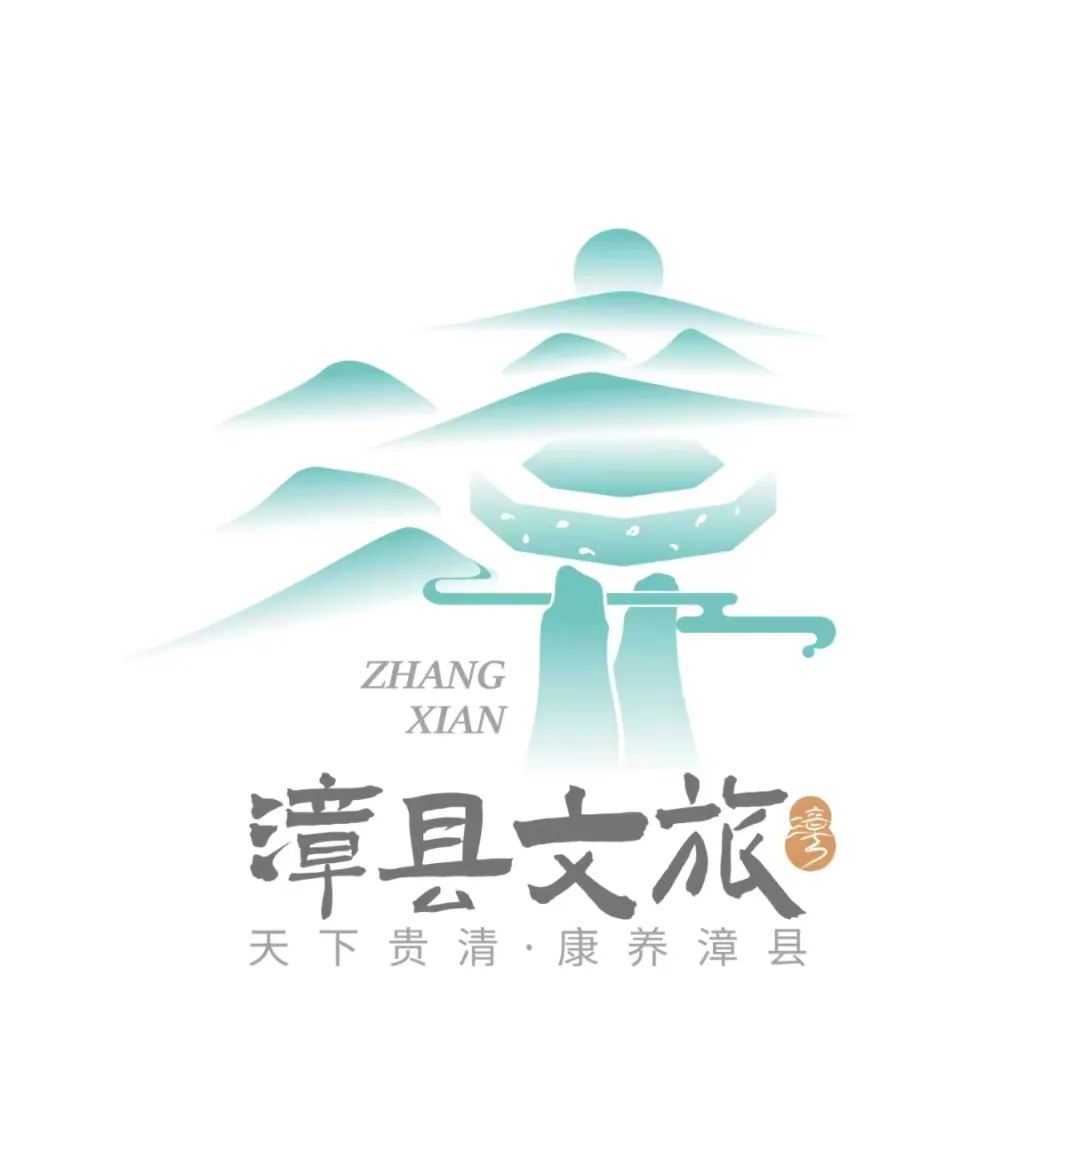 漳县文化旅游形象标识（LOGO）设计方案及宣传口号征集结果